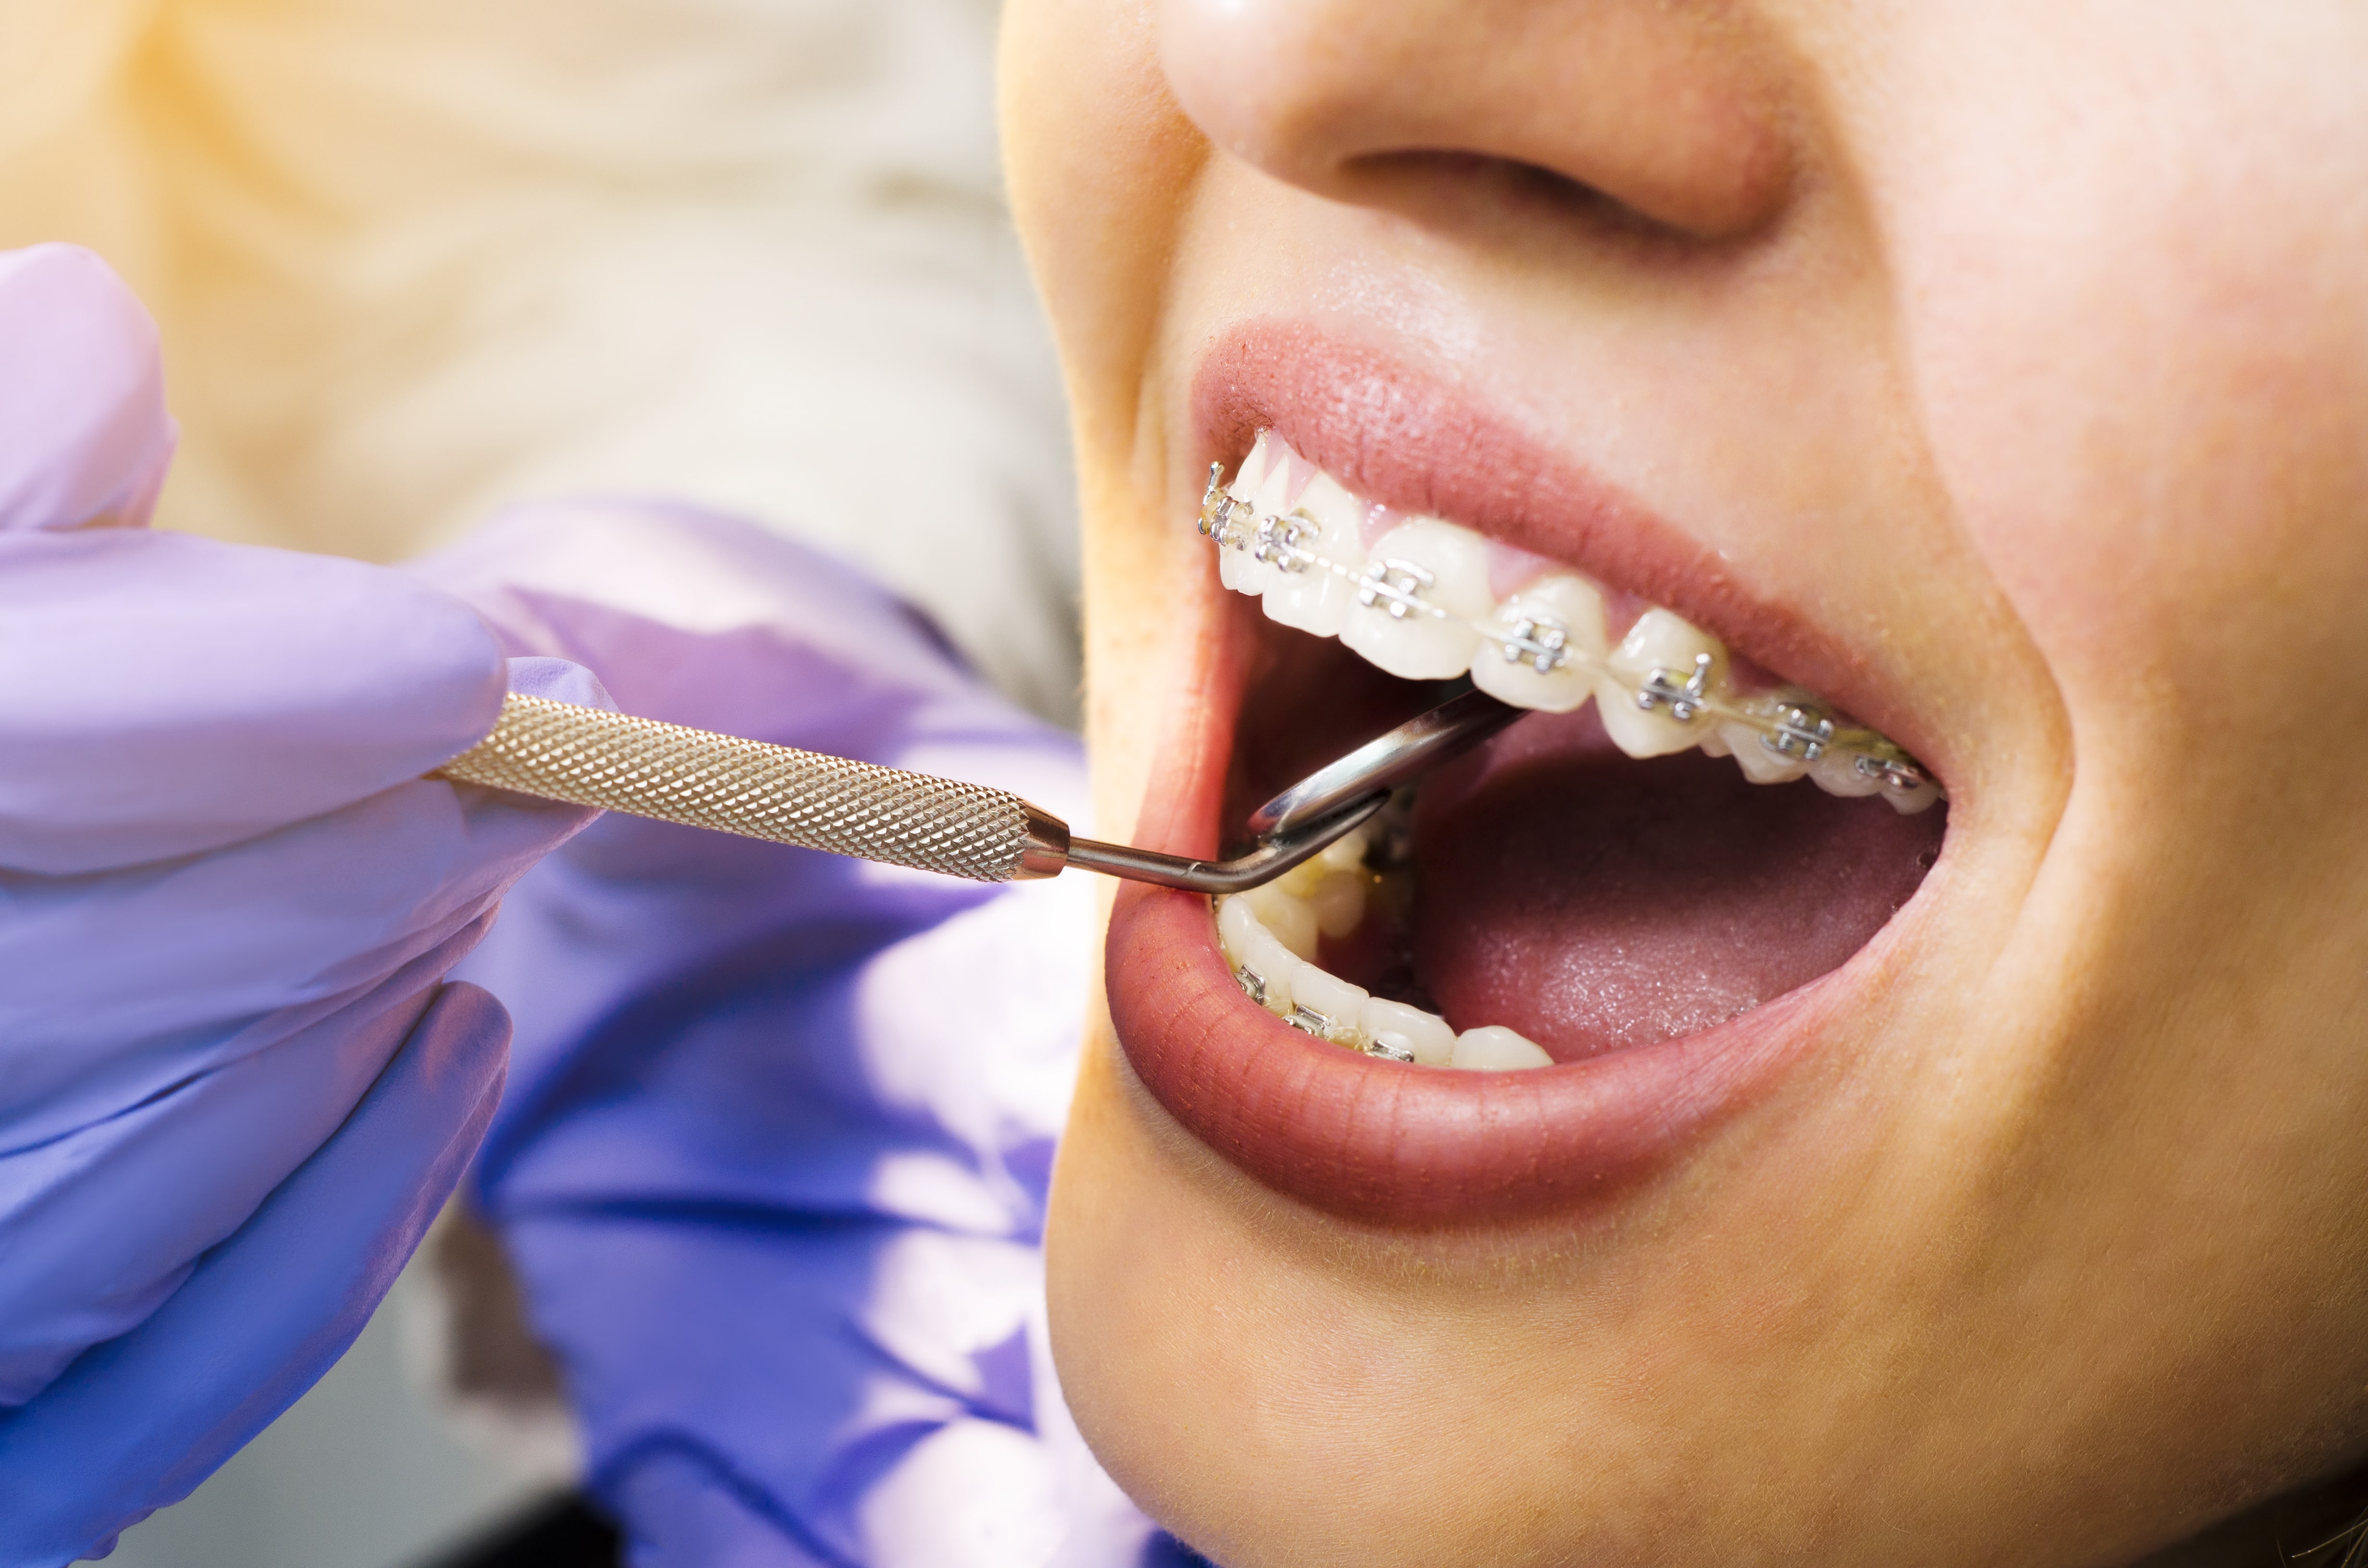 Dental Braces Treatment Details